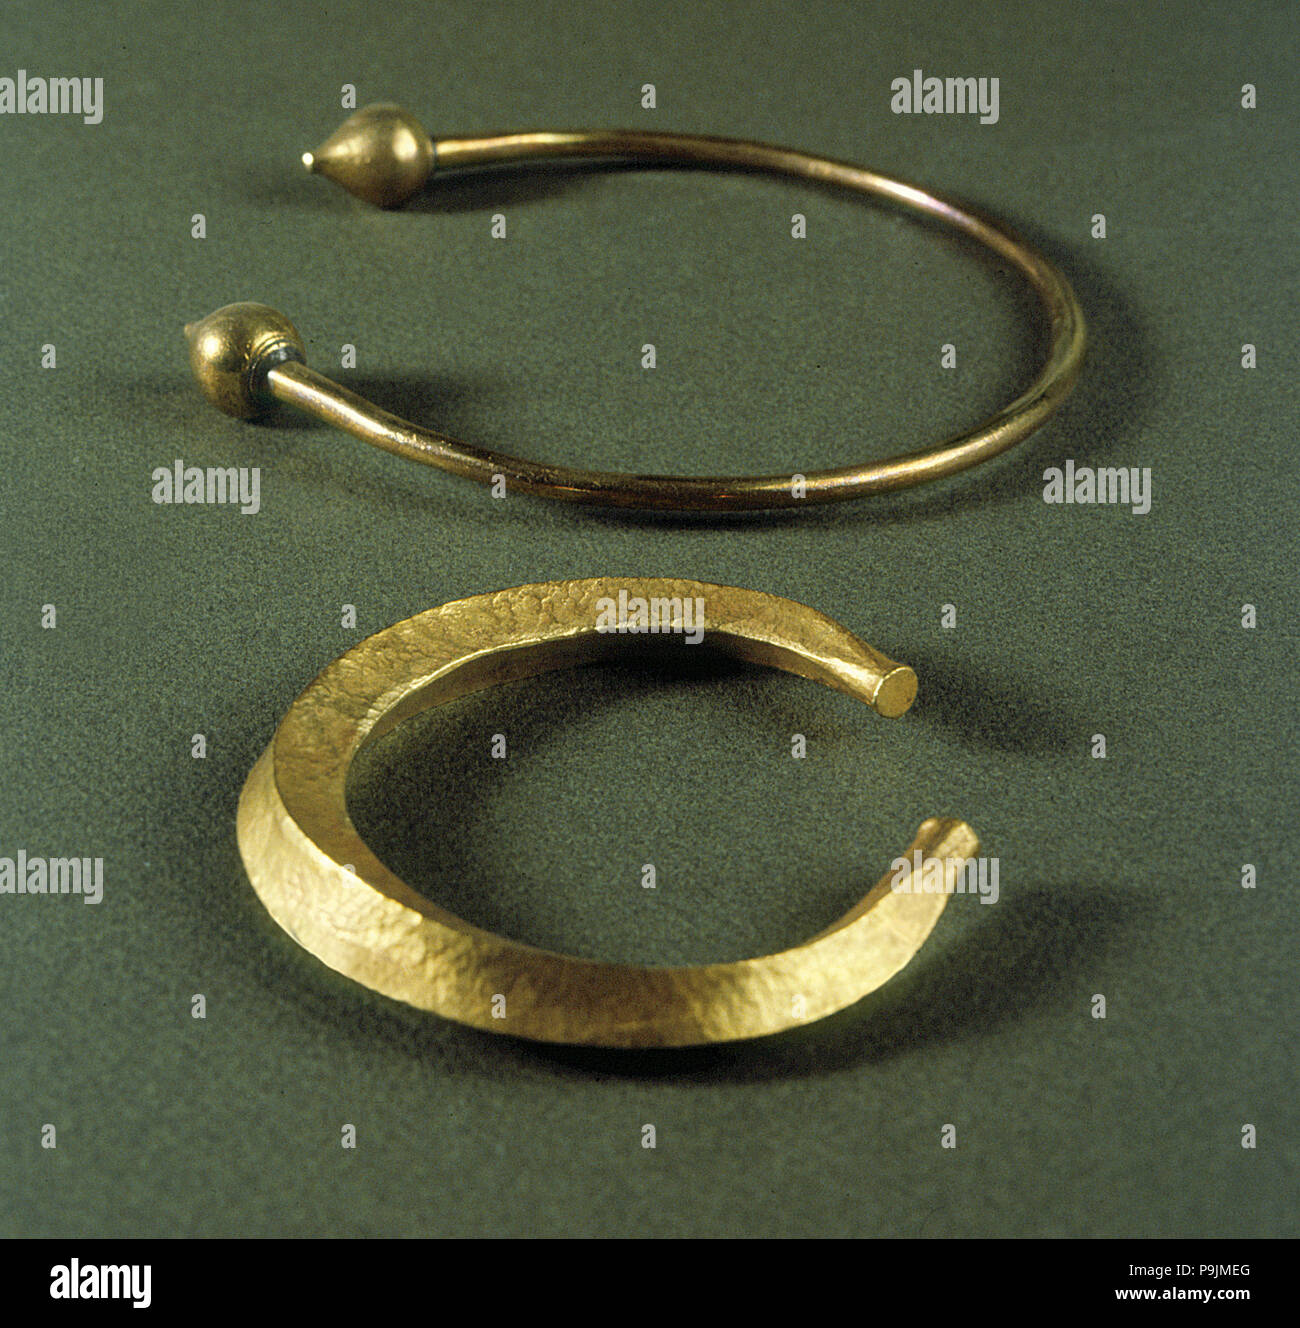 Bijoux celtiques, bracelet et collier en or Photo Stock - Alamy